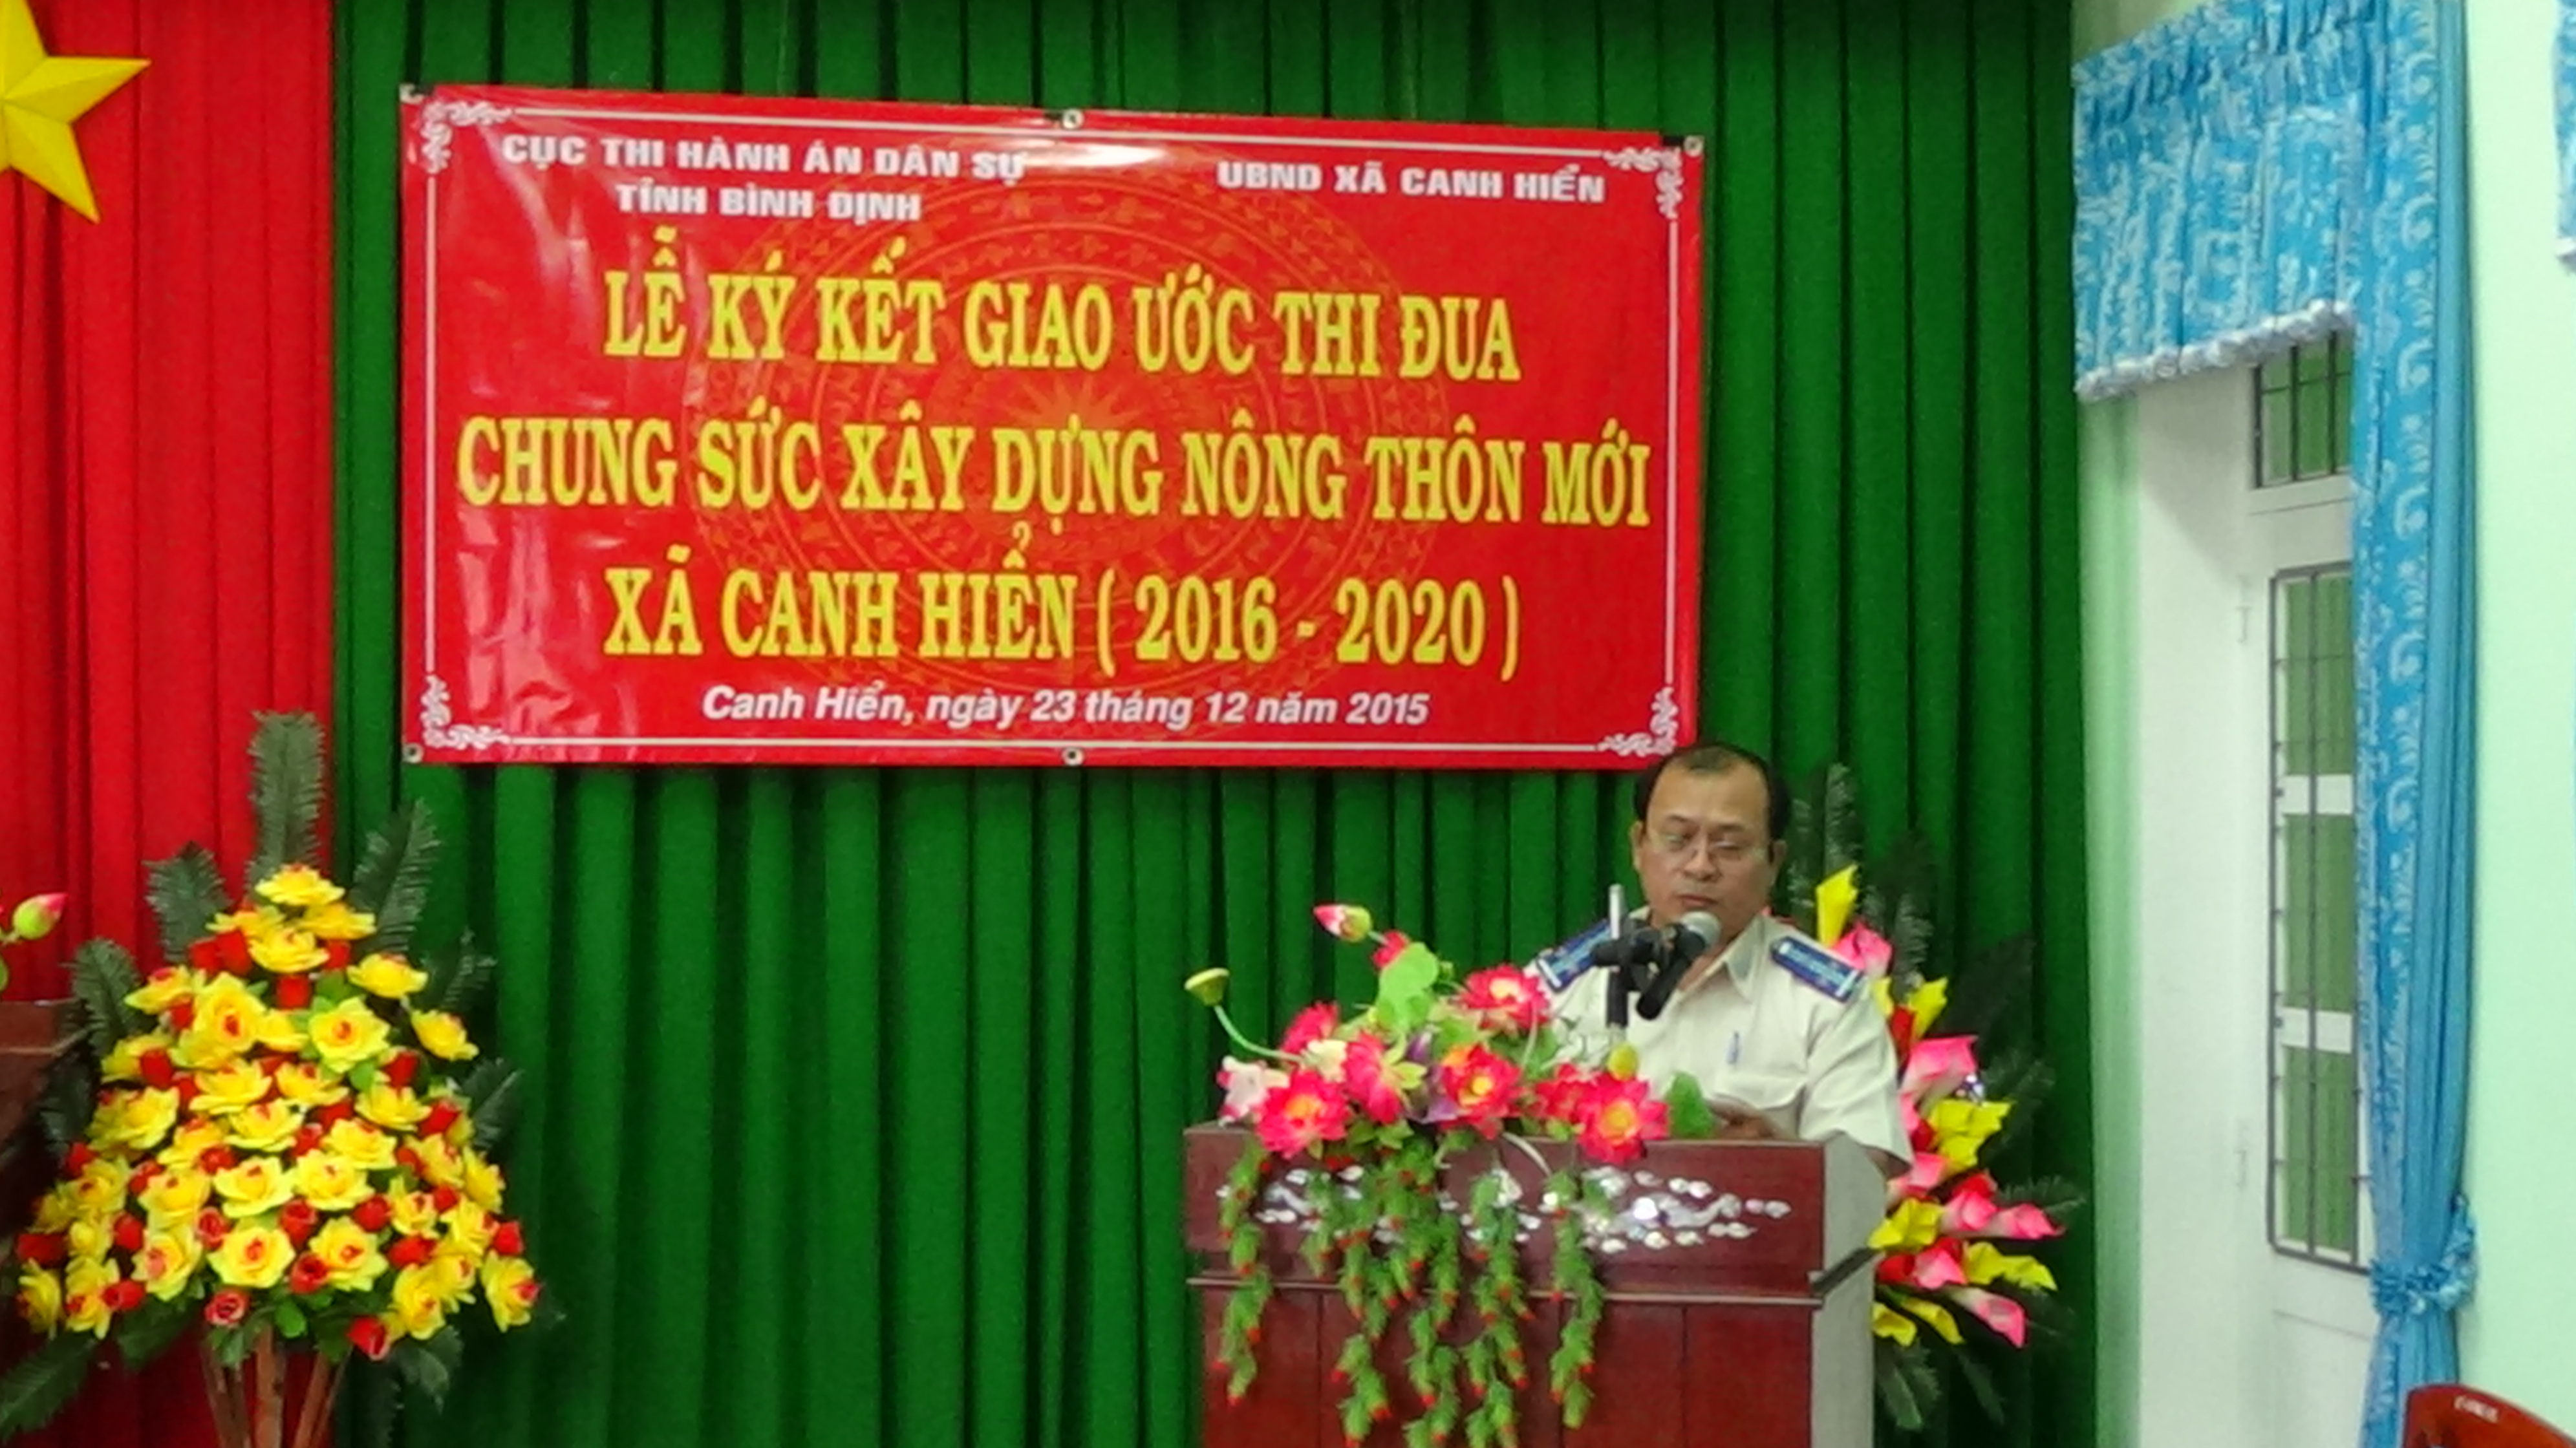 Cục Thi hành án dân sự tỉnh Bình Định ký kết giao ước thi đua chung sức xây dựng nông thôn mới, giai đoạn 2016 – 2020 tại xã Canh Hiển, huyện Vân Canh, tỉnh Bình Định.